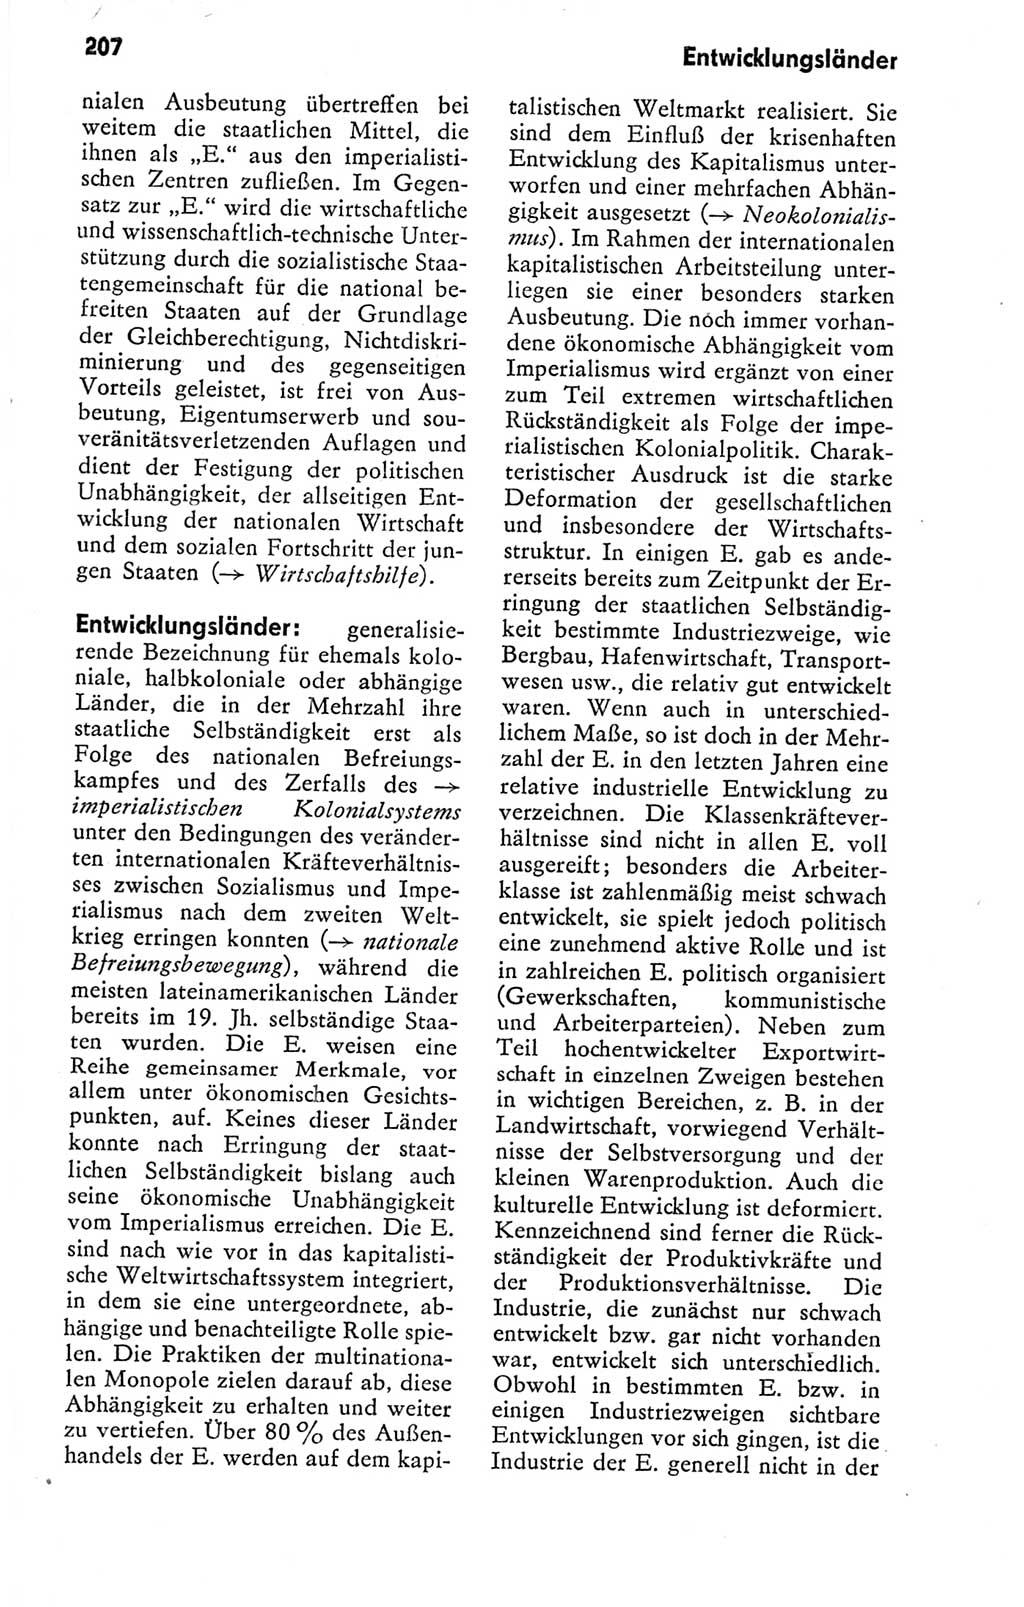 Kleines politisches Wörterbuch [Deutsche Demokratische Republik (DDR)] 1978, Seite 207 (Kl. pol. Wb. DDR 1978, S. 207)